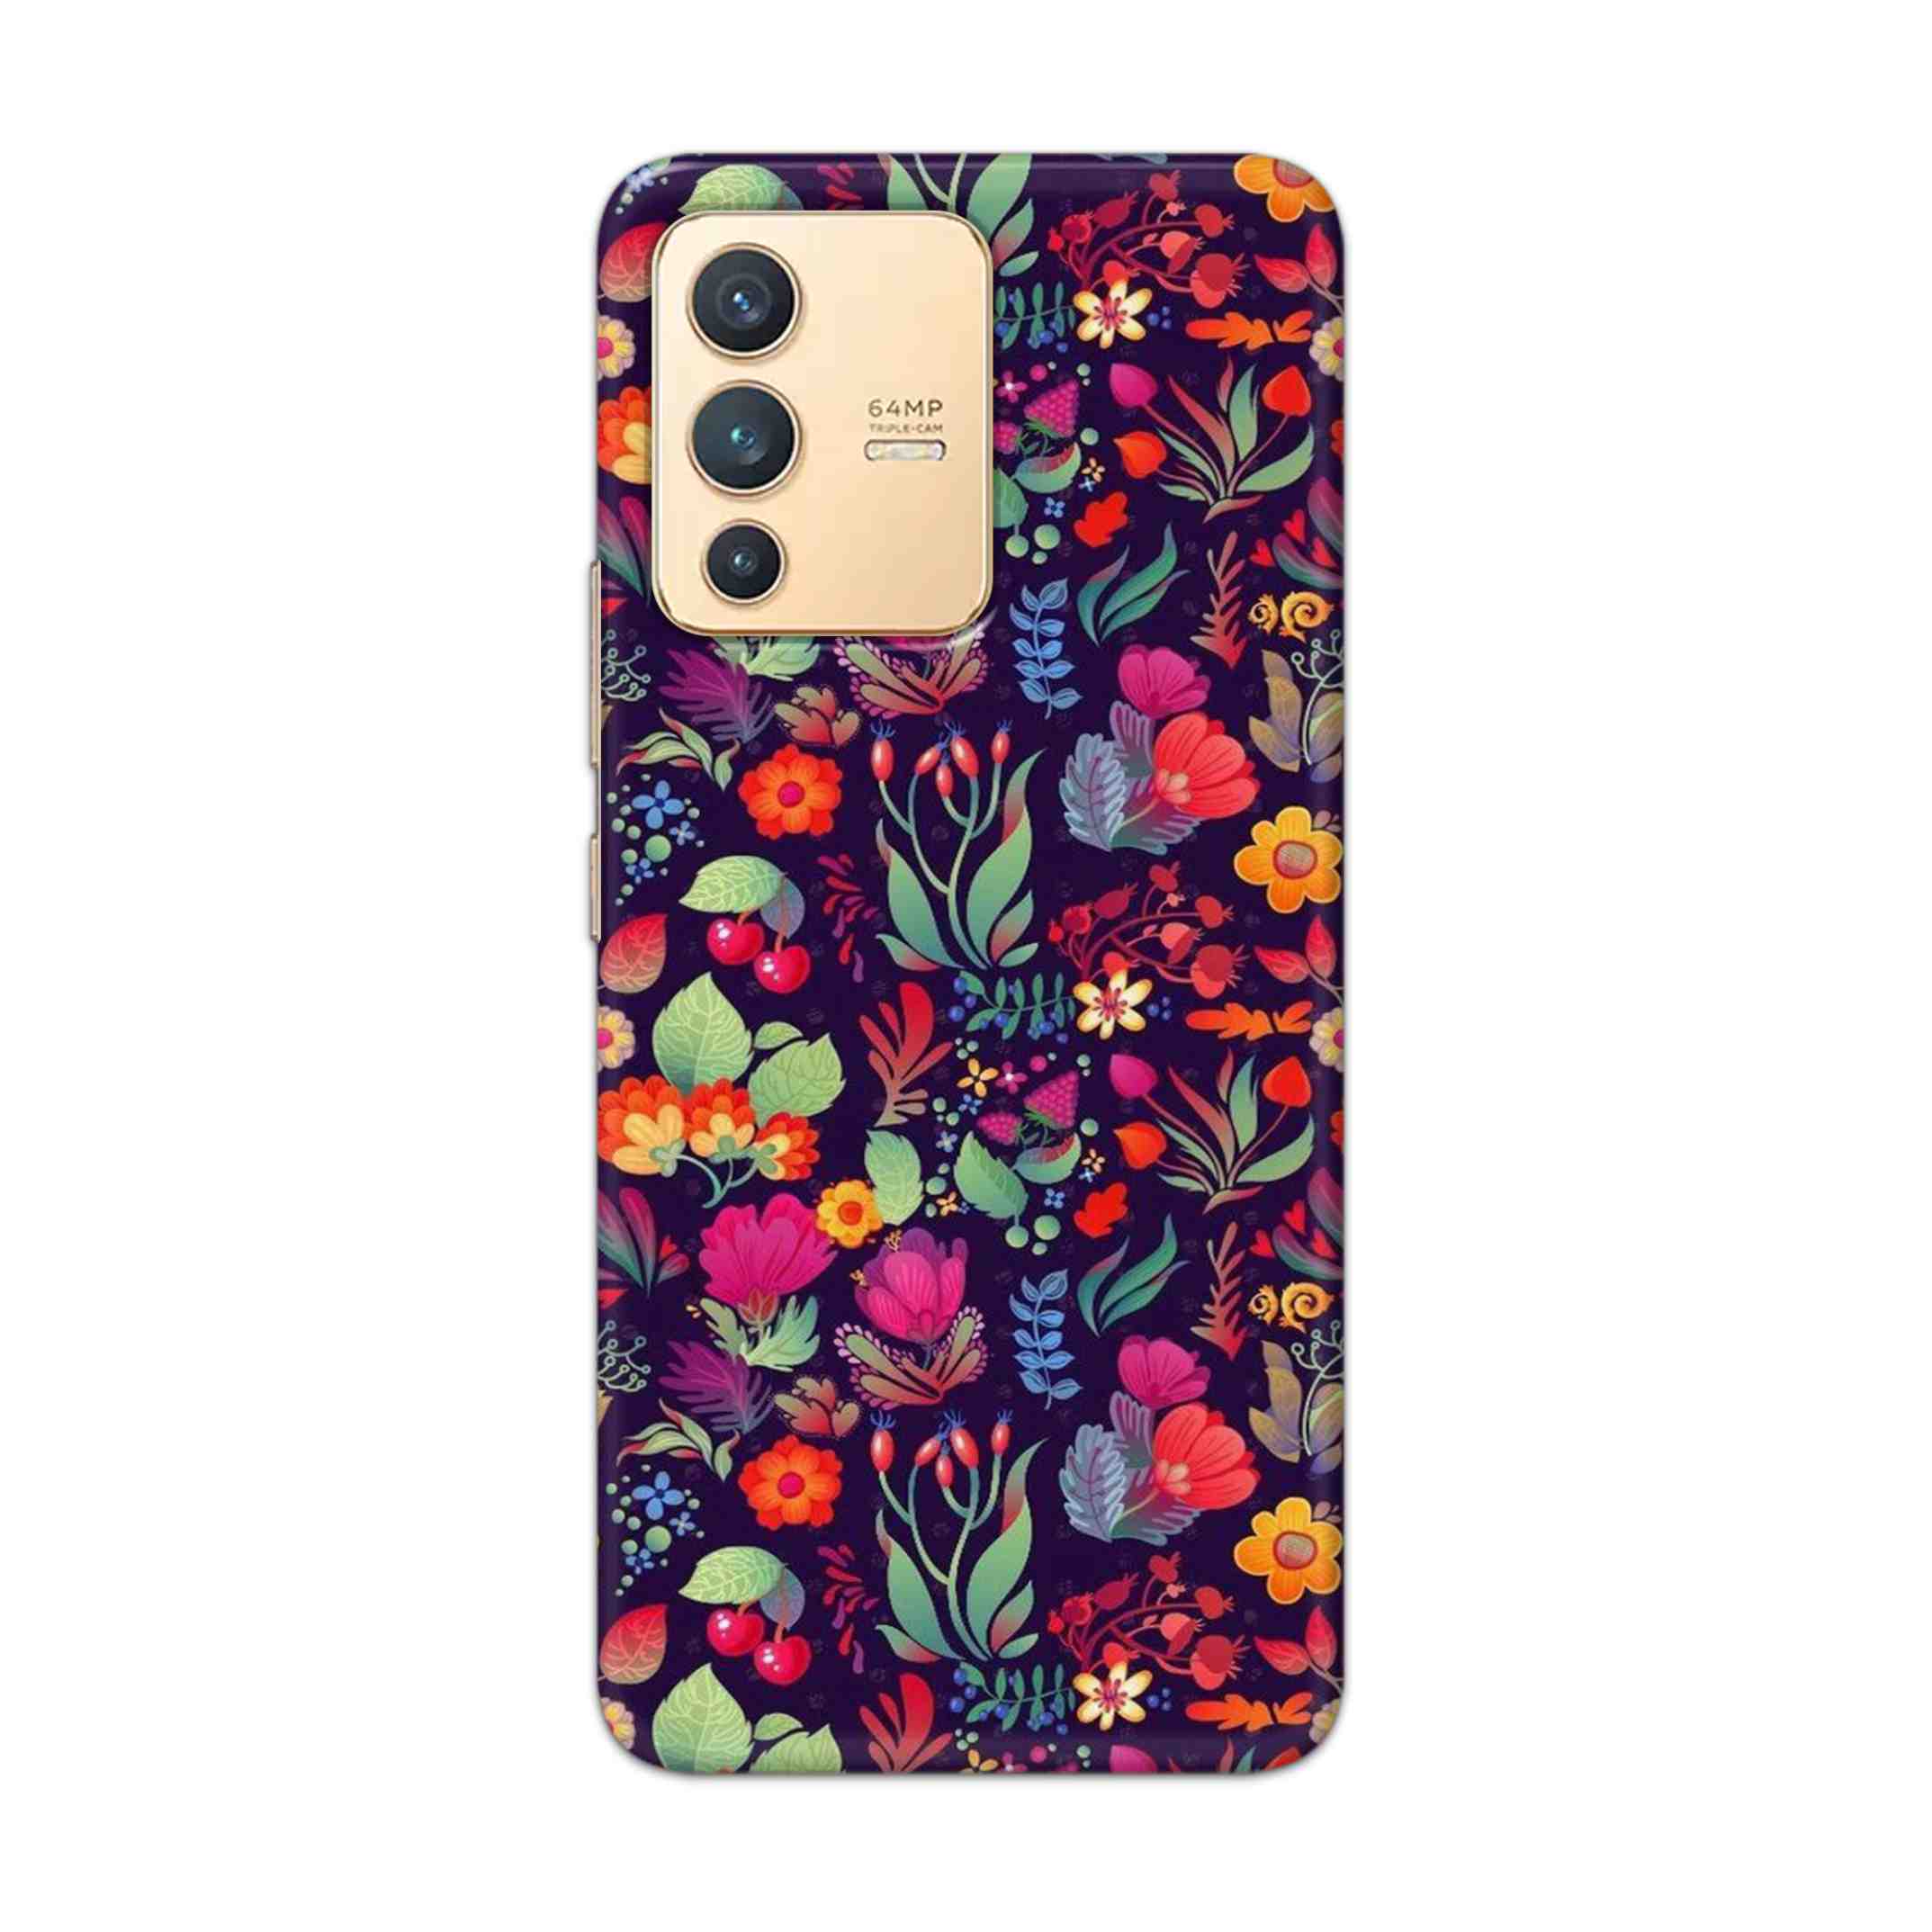 Buy Fruits Flower Hard Back Mobile Phone Case Cover For Vivo V23 Online